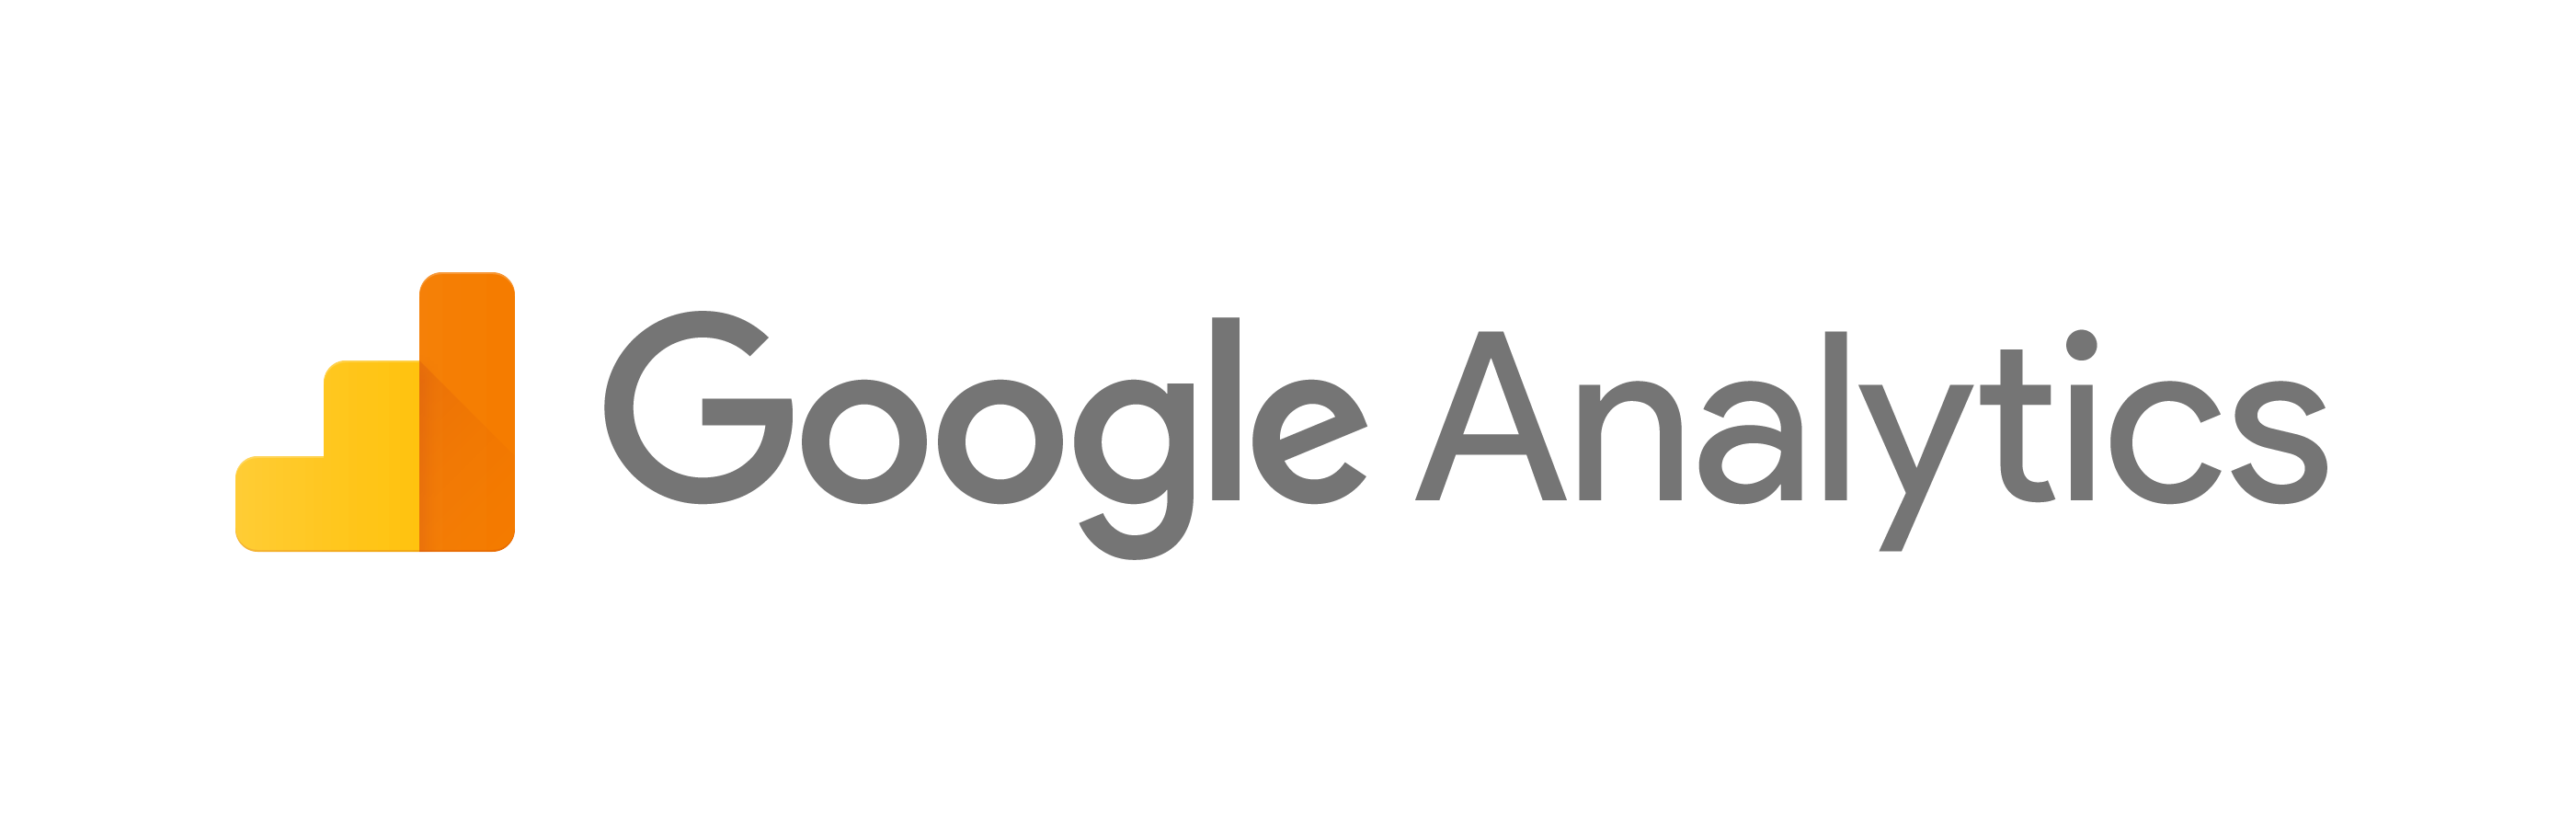 Google-Analytics-logo-Arkheus